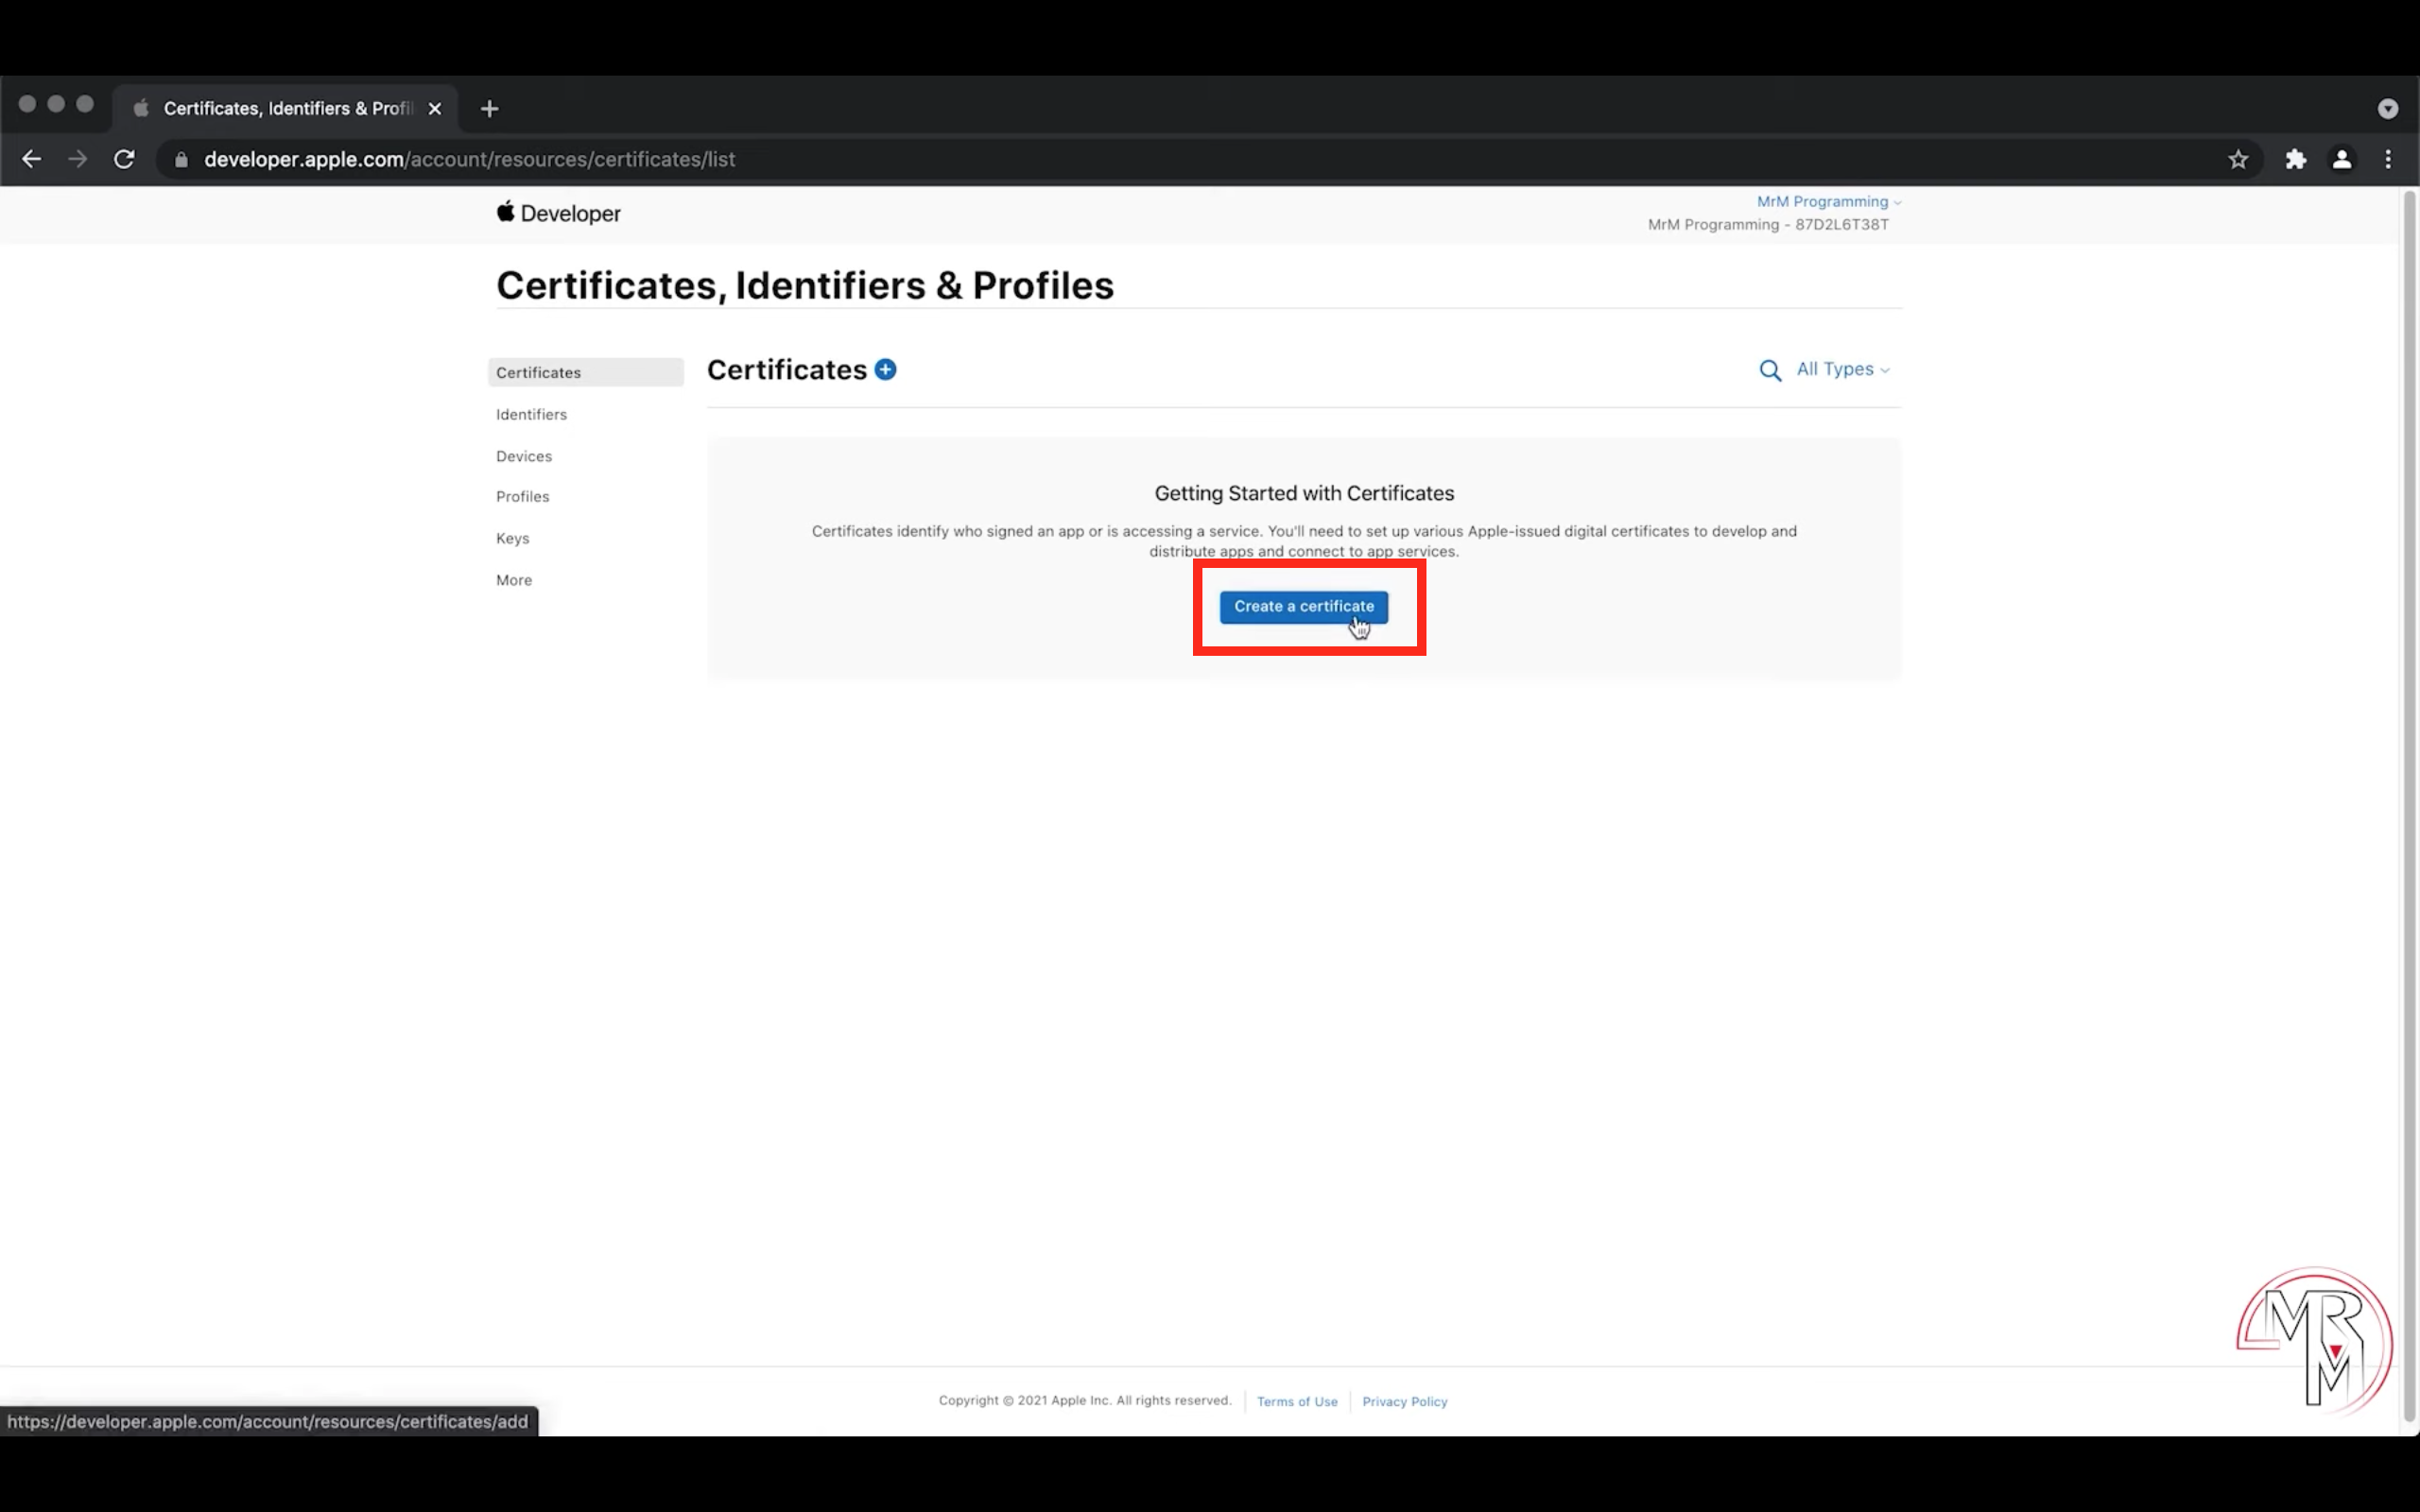 Create a certificate